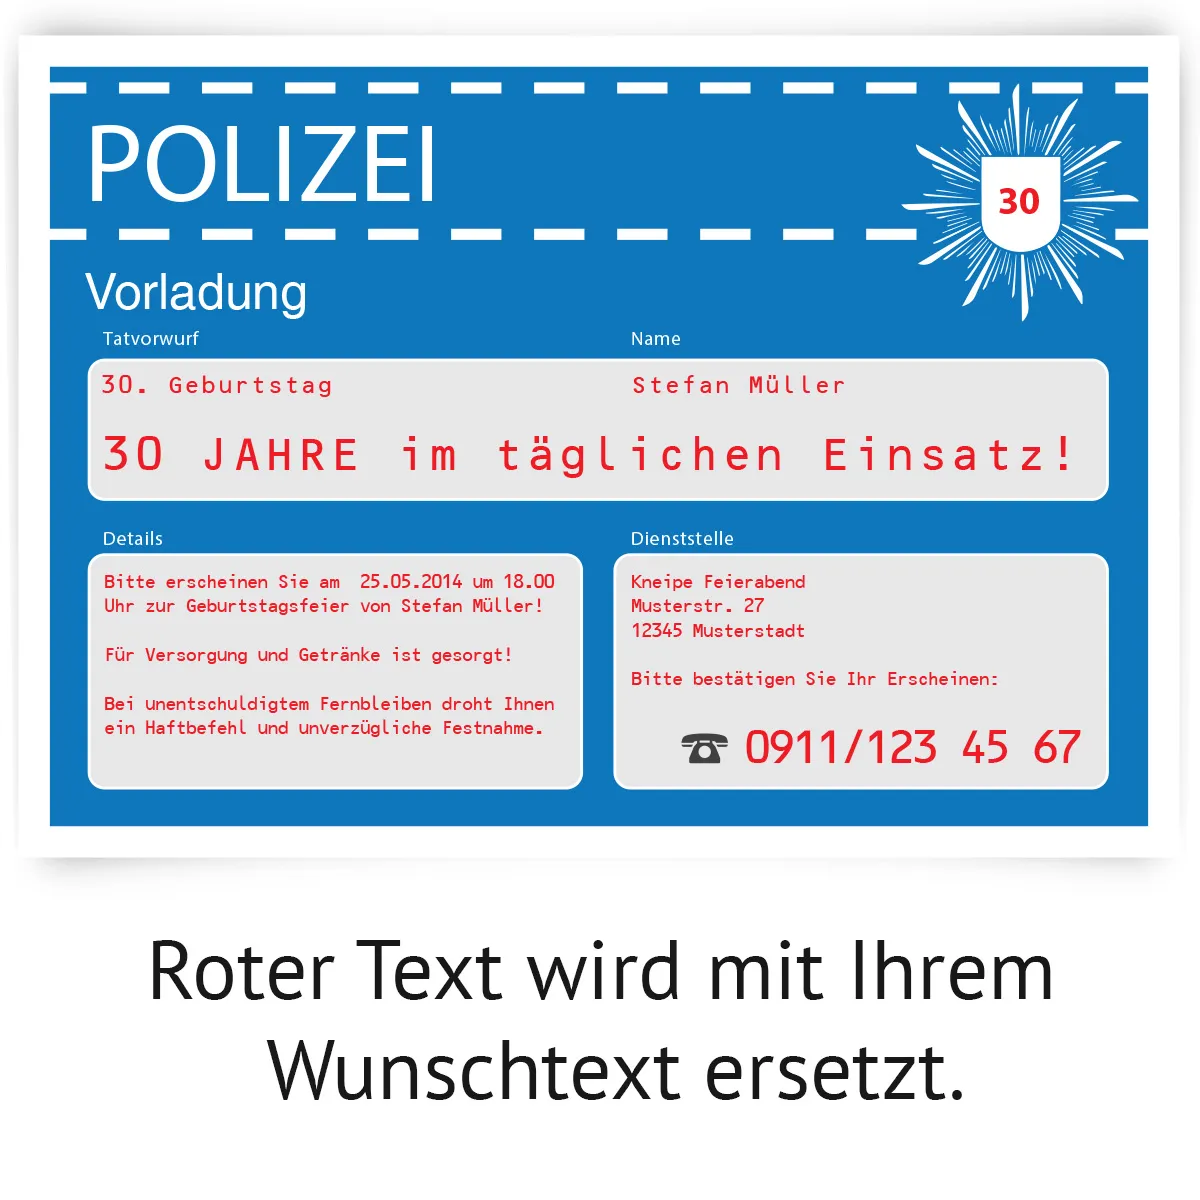 Einladungskarte als Polizeivorladung - Blau